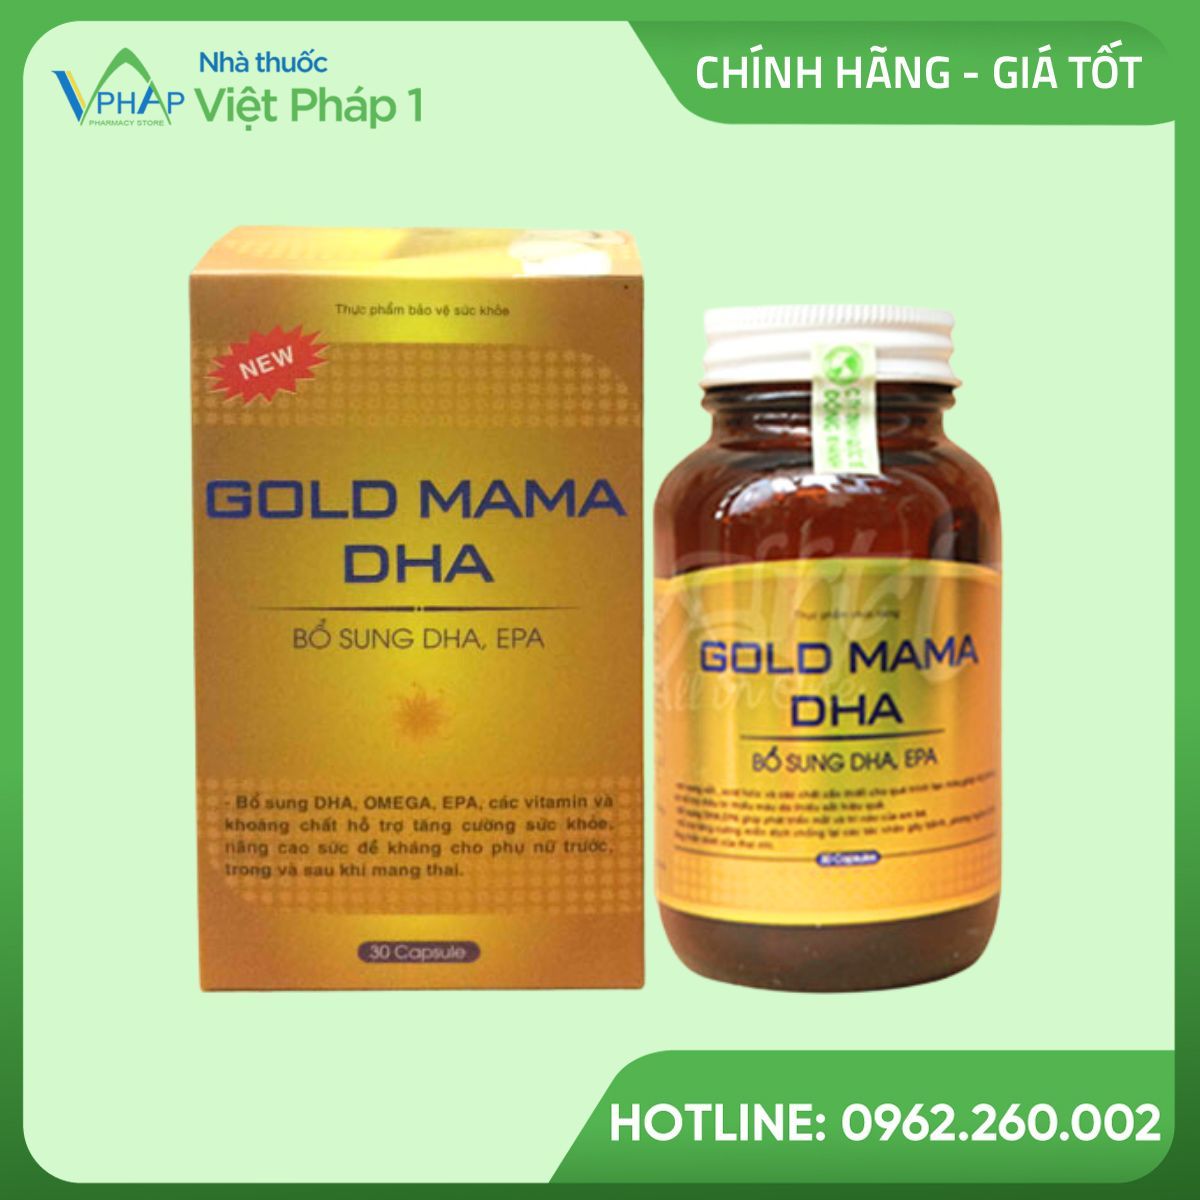 Hình ảnh sản phẩm Gold Mama DHA